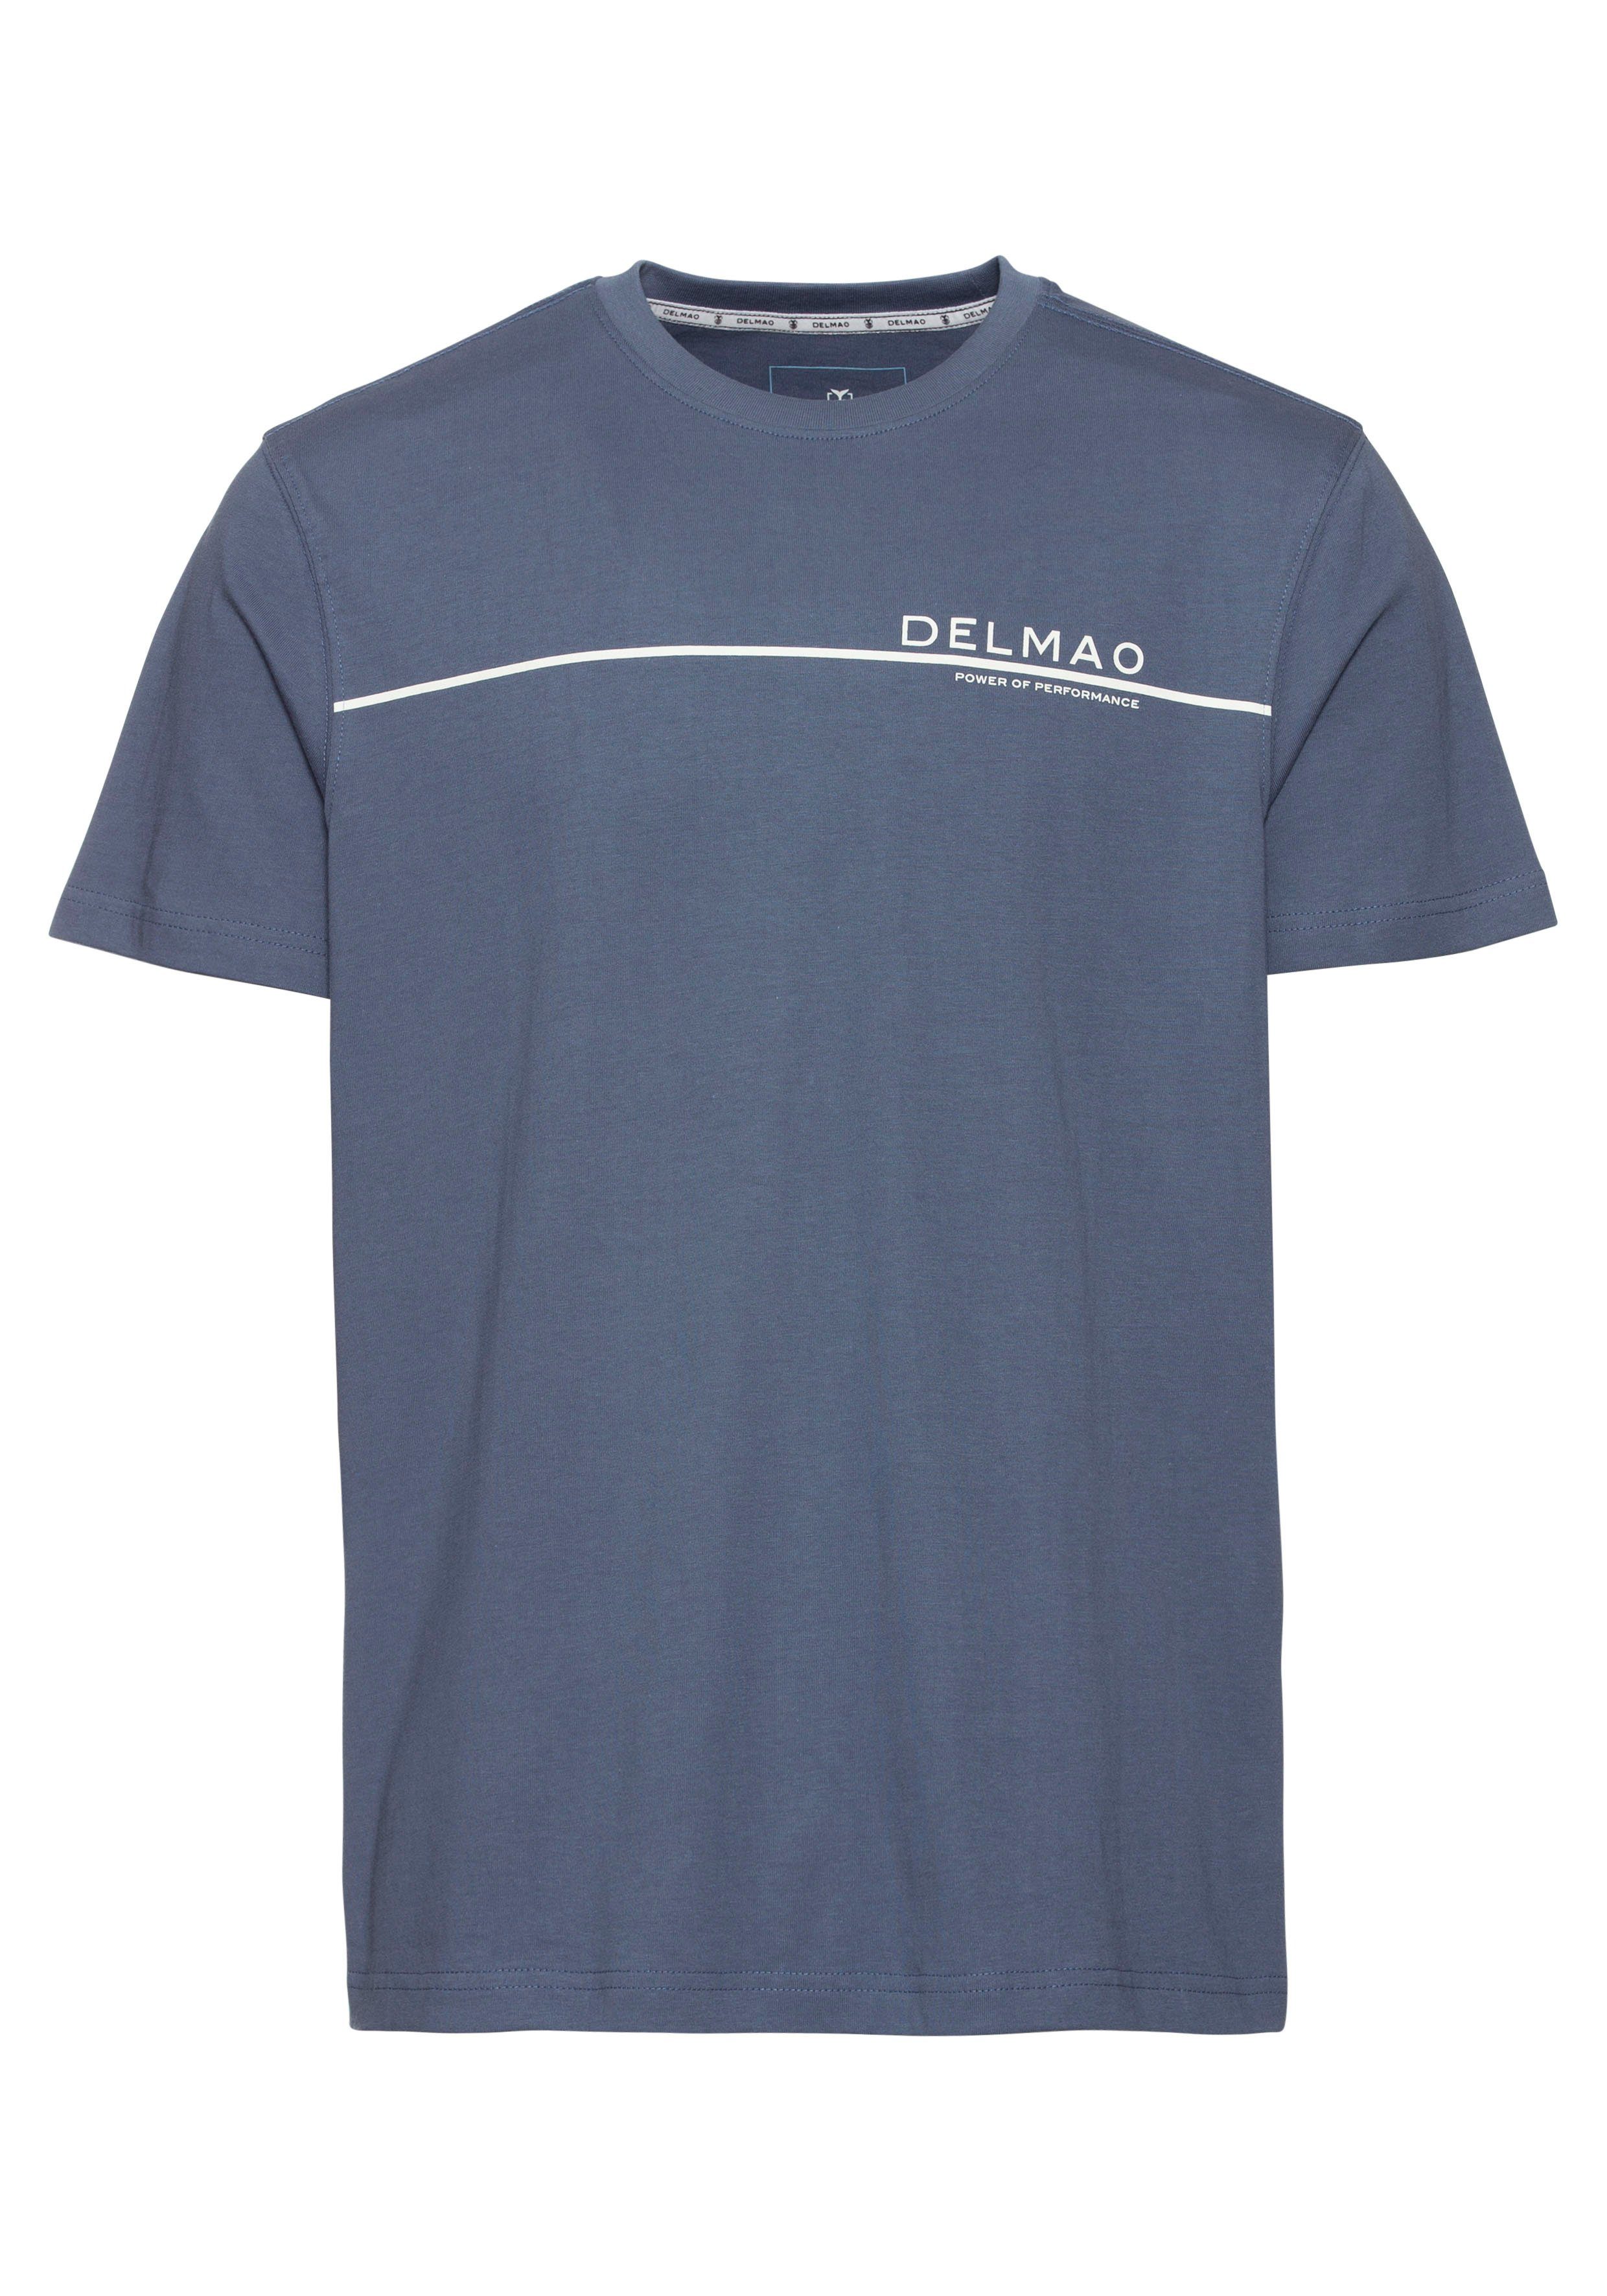 DELMAO T-Shirt mit modischem blau NEUE - indigo MARKE! Brustprint